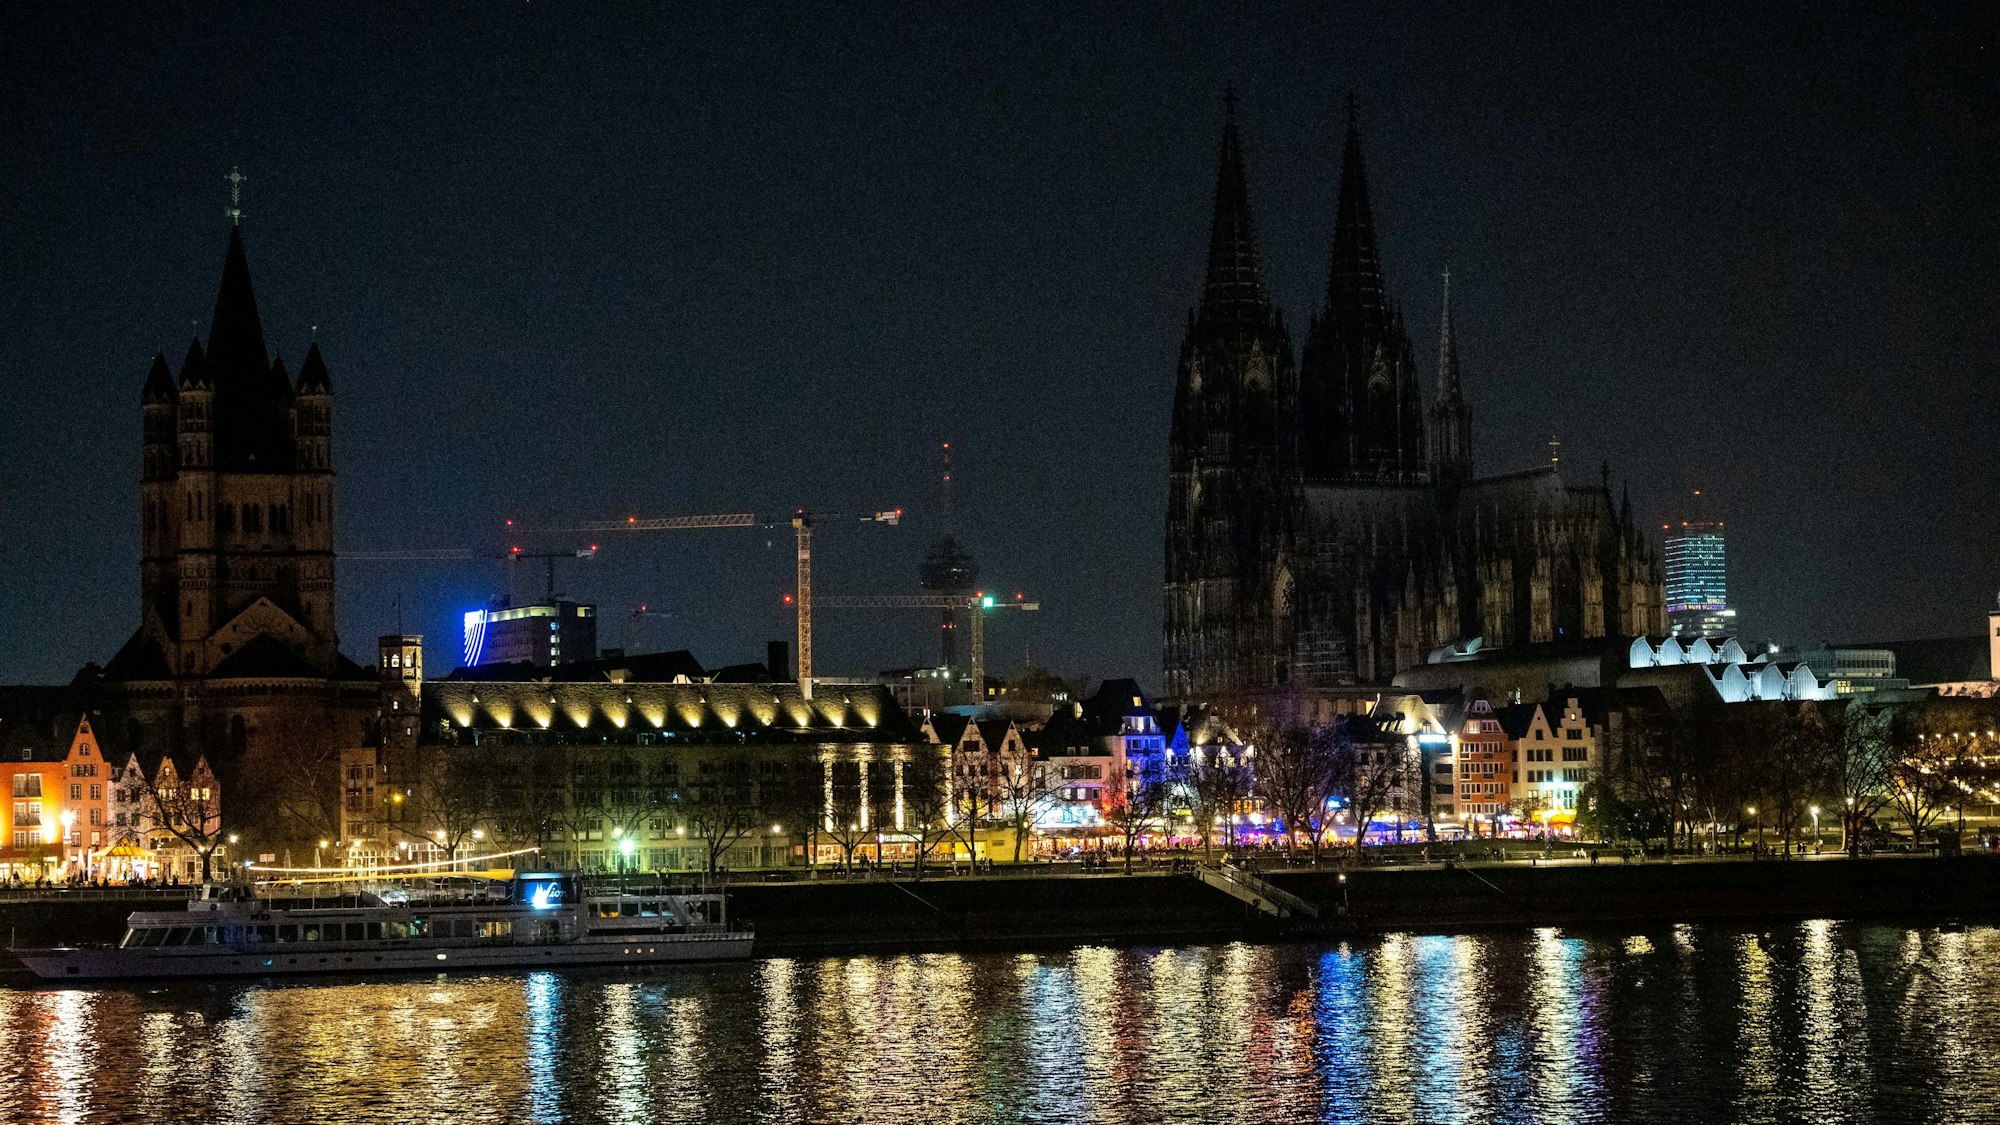 Das Bild zeigt die dunkle Skyline Kölns mit wenigen beleuchteten Altstadthäusern.